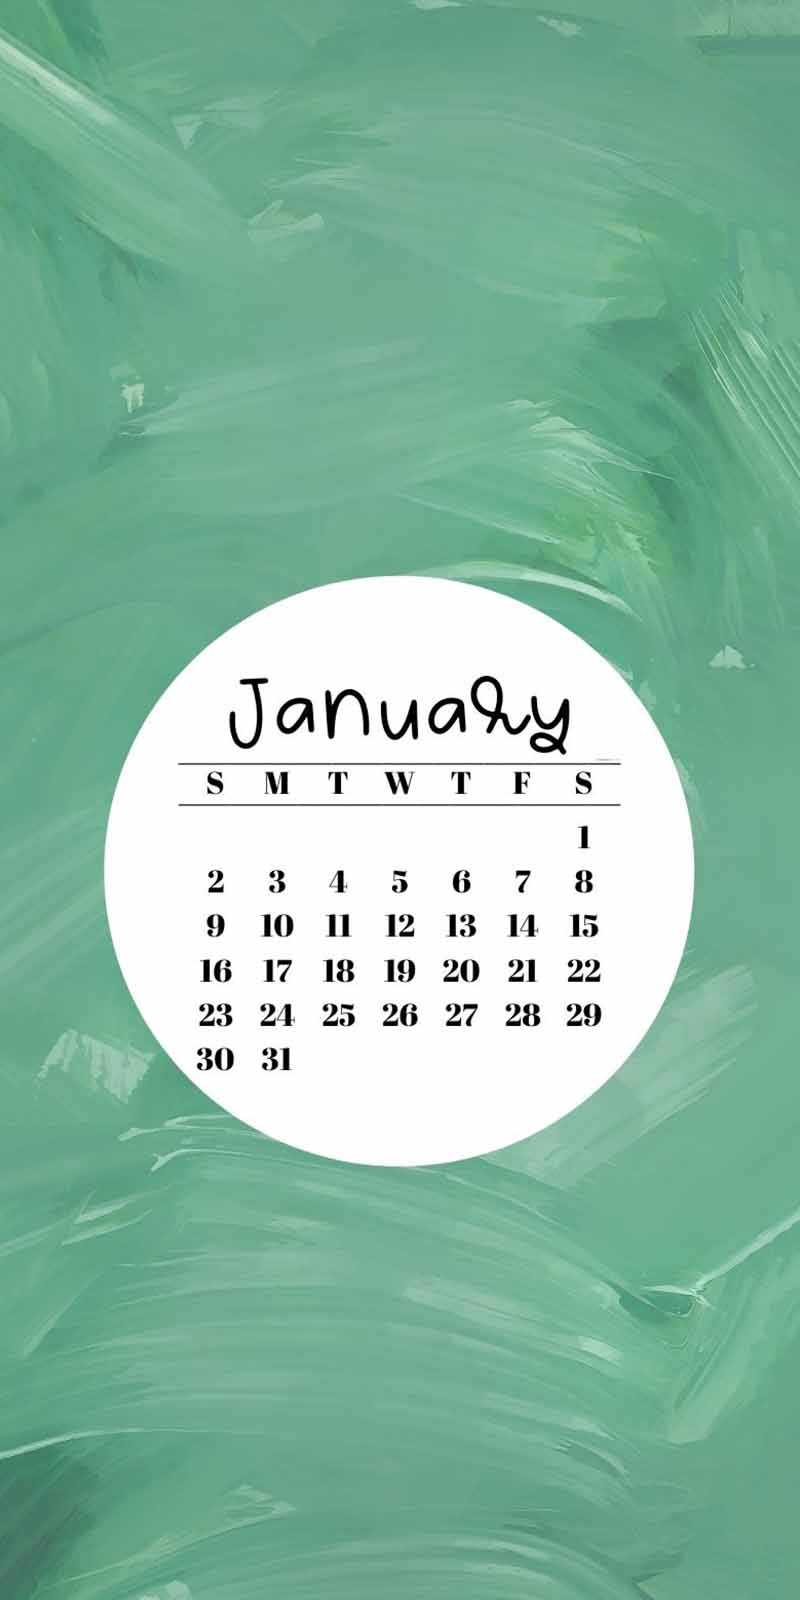 January 2022 Calendar Wallpaper Ipad.2022 January Wallpaper Ixpap